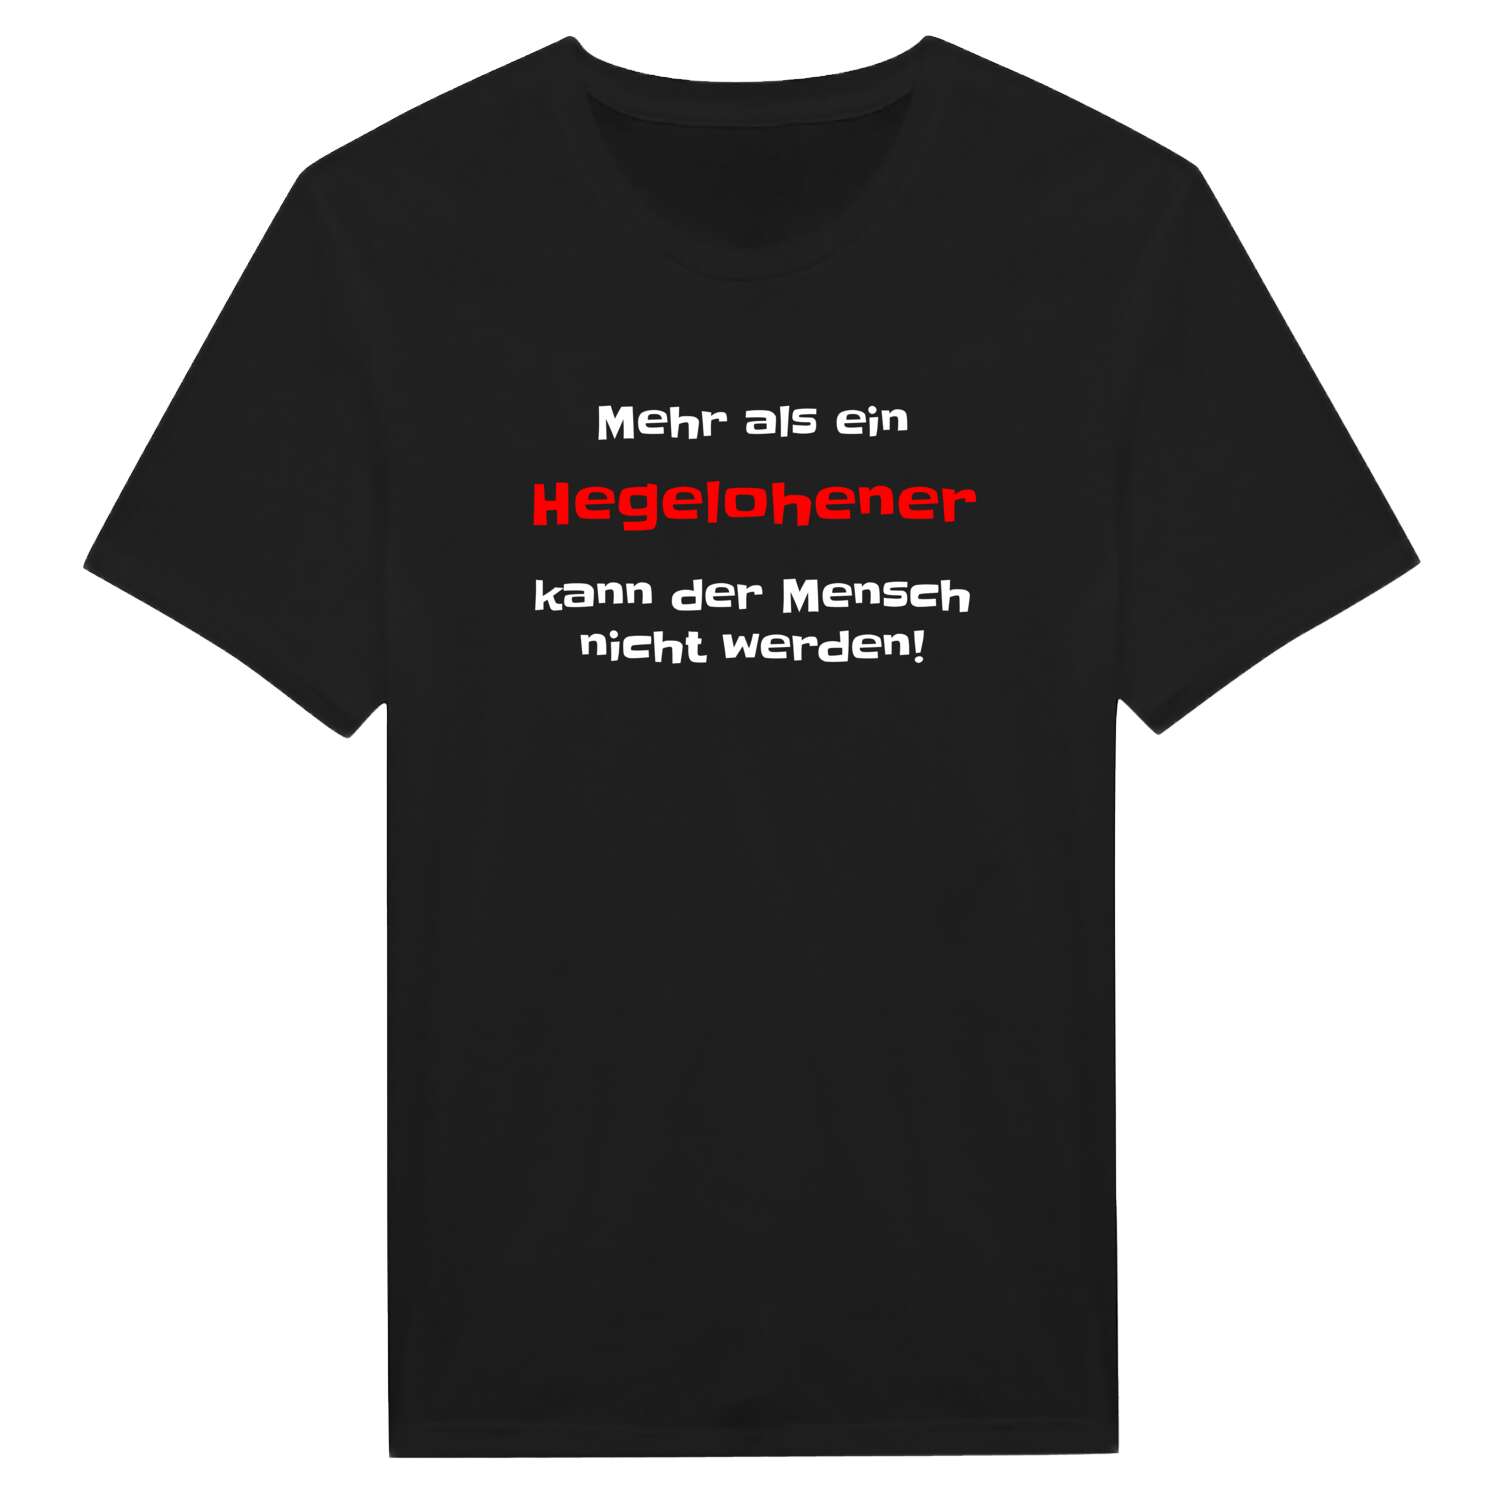 Hegelohe T-Shirt »Mehr als ein«